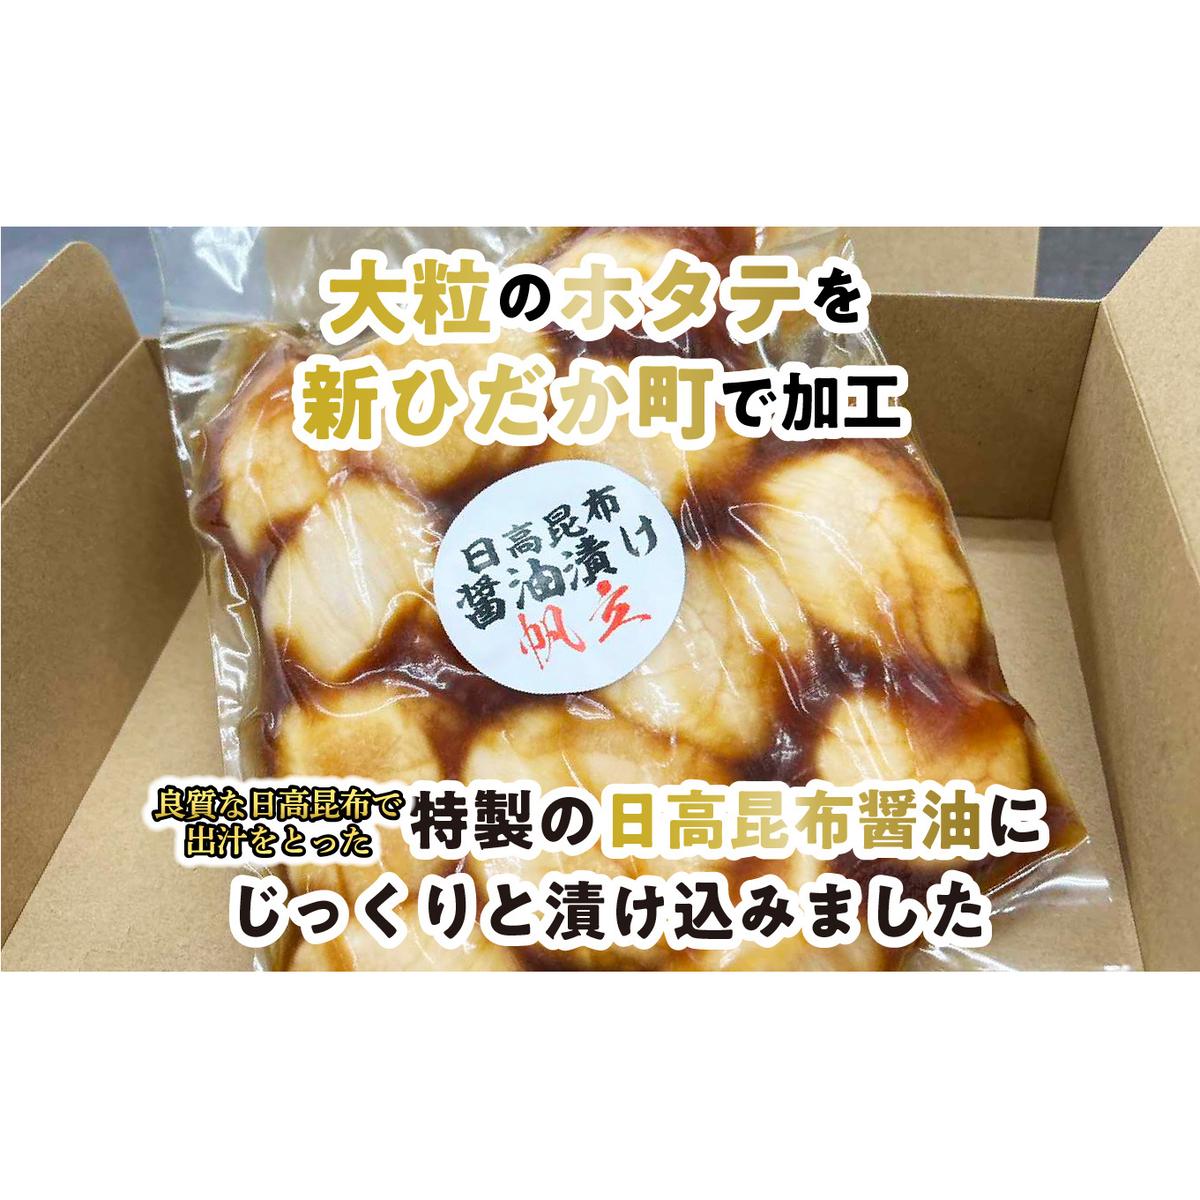 北海道産 ホタテ 日高昆布 醤油漬け 計 1.05kg (350g×3袋)